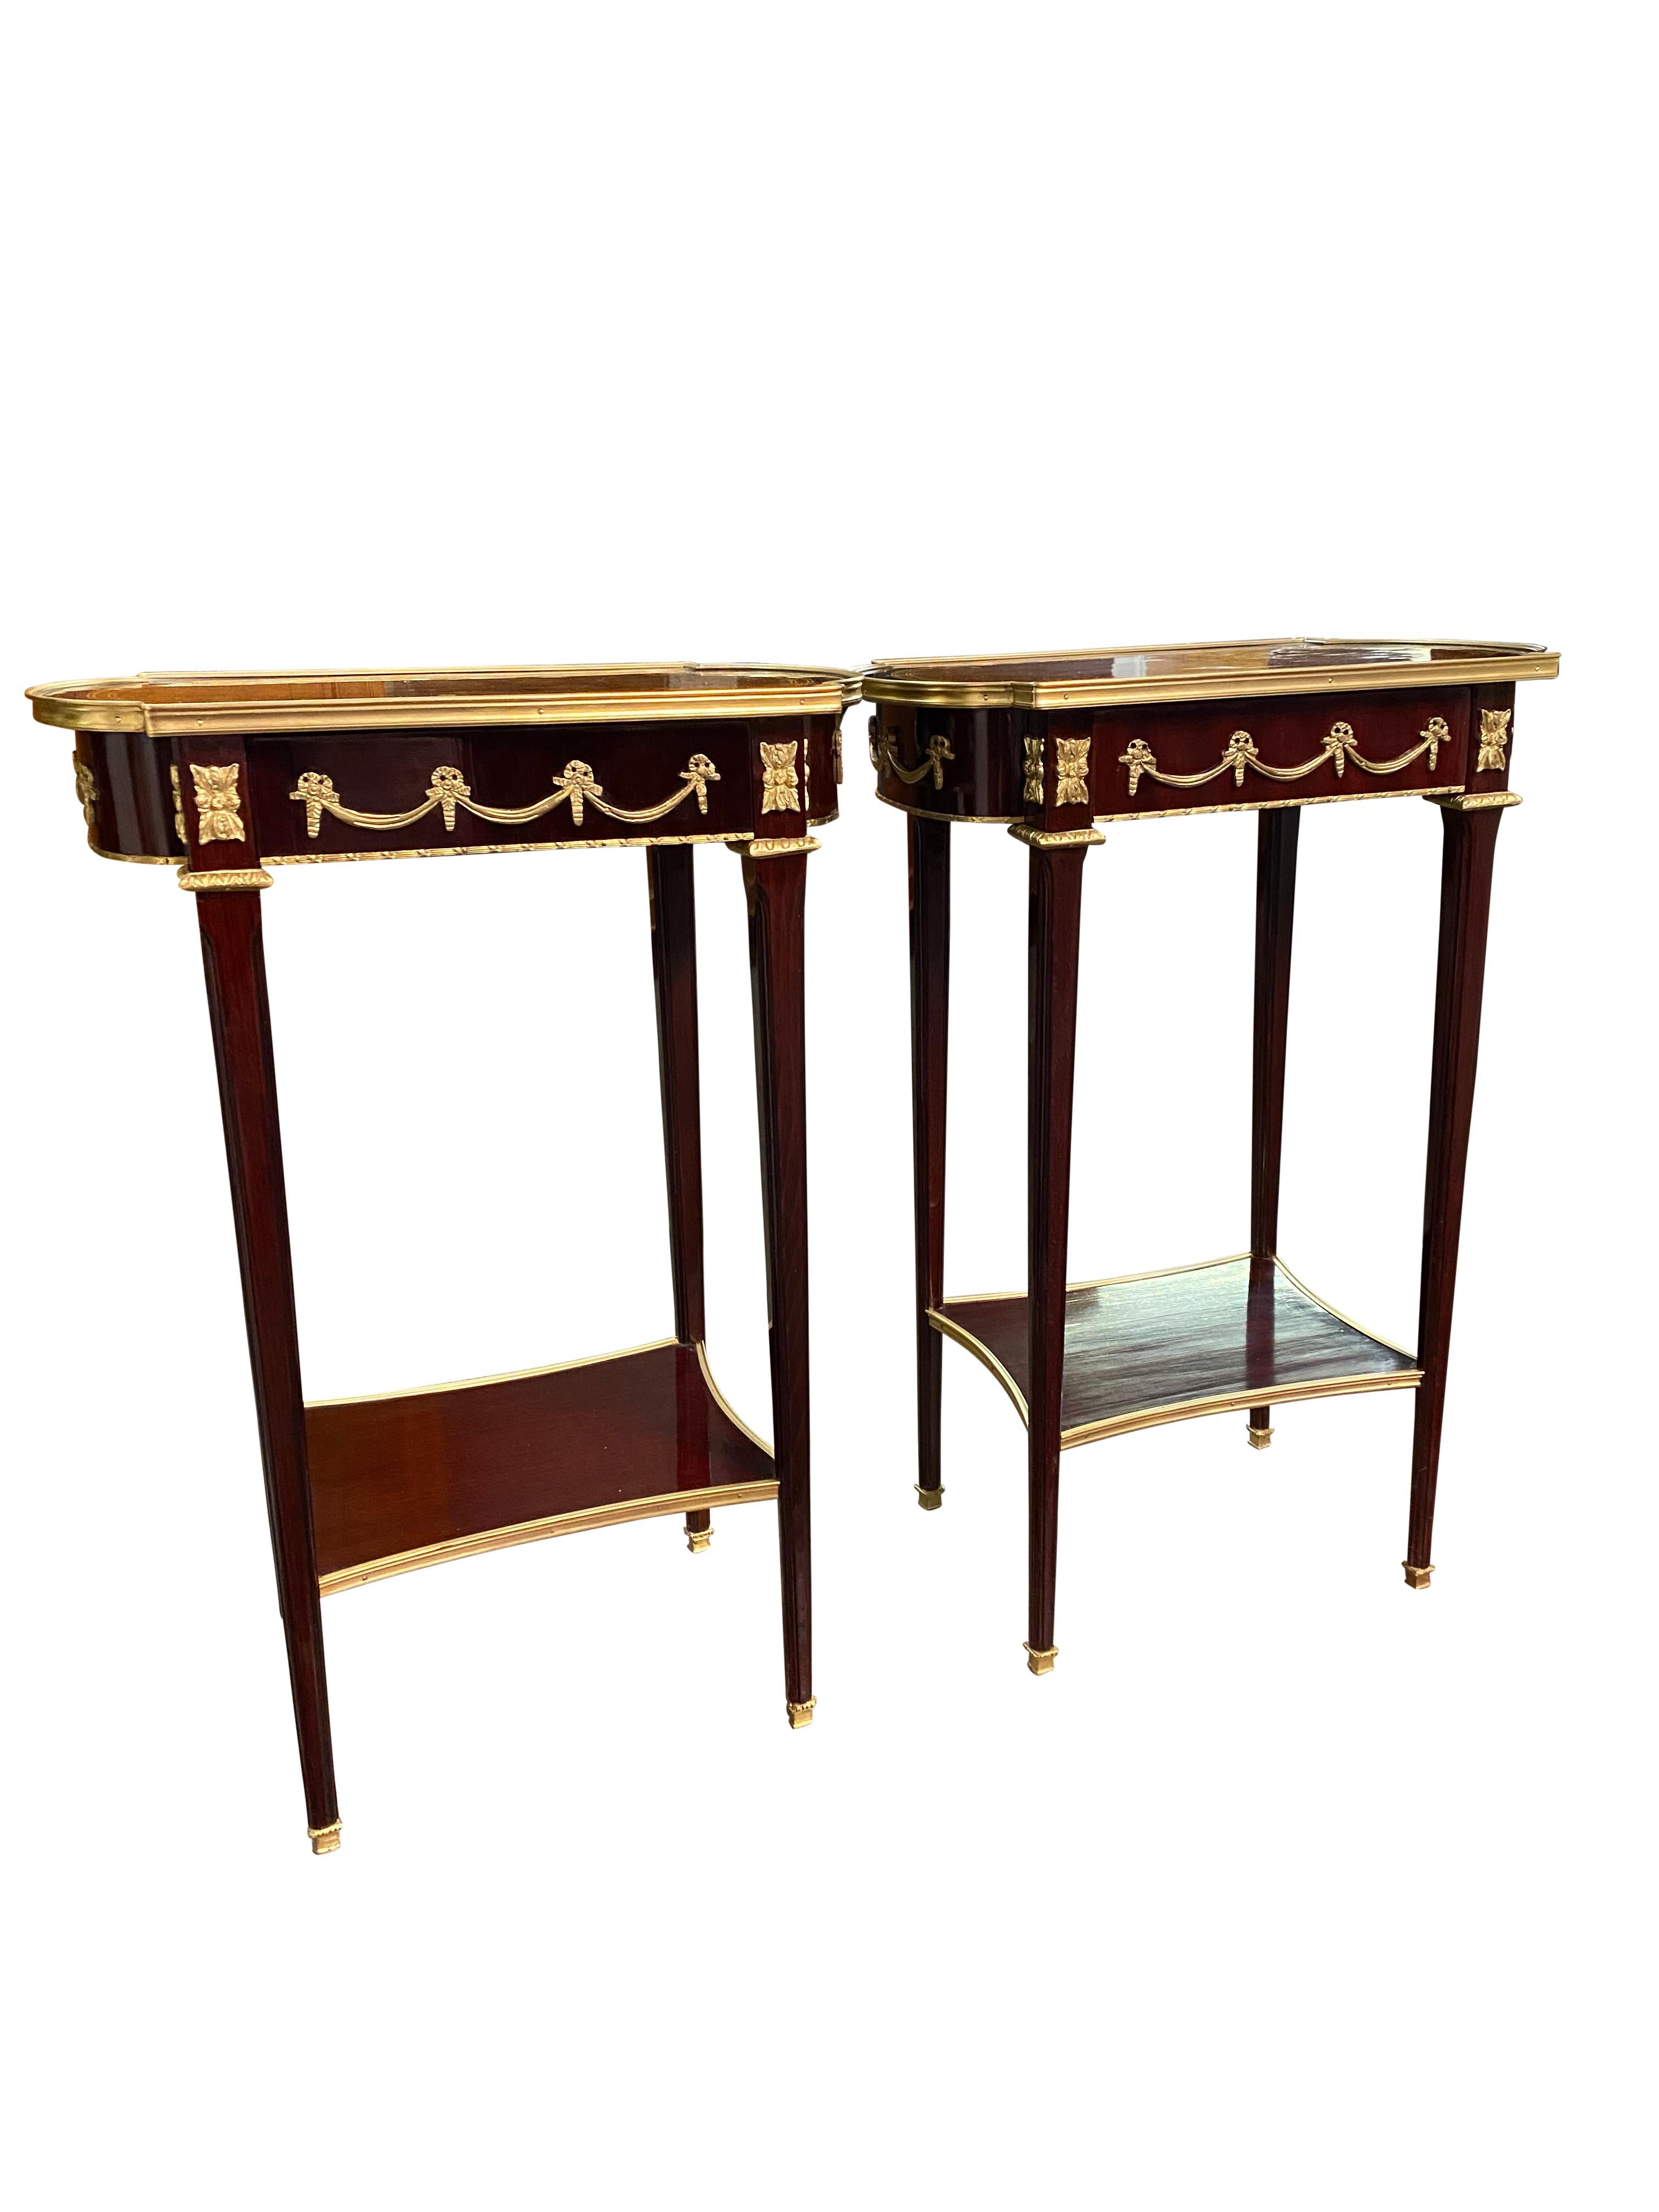 Une superbe paire de tables d'appoint de style Empire du 20ème siècle. Un design magnifique et élégant, parfait pour les intérieurs modernes.